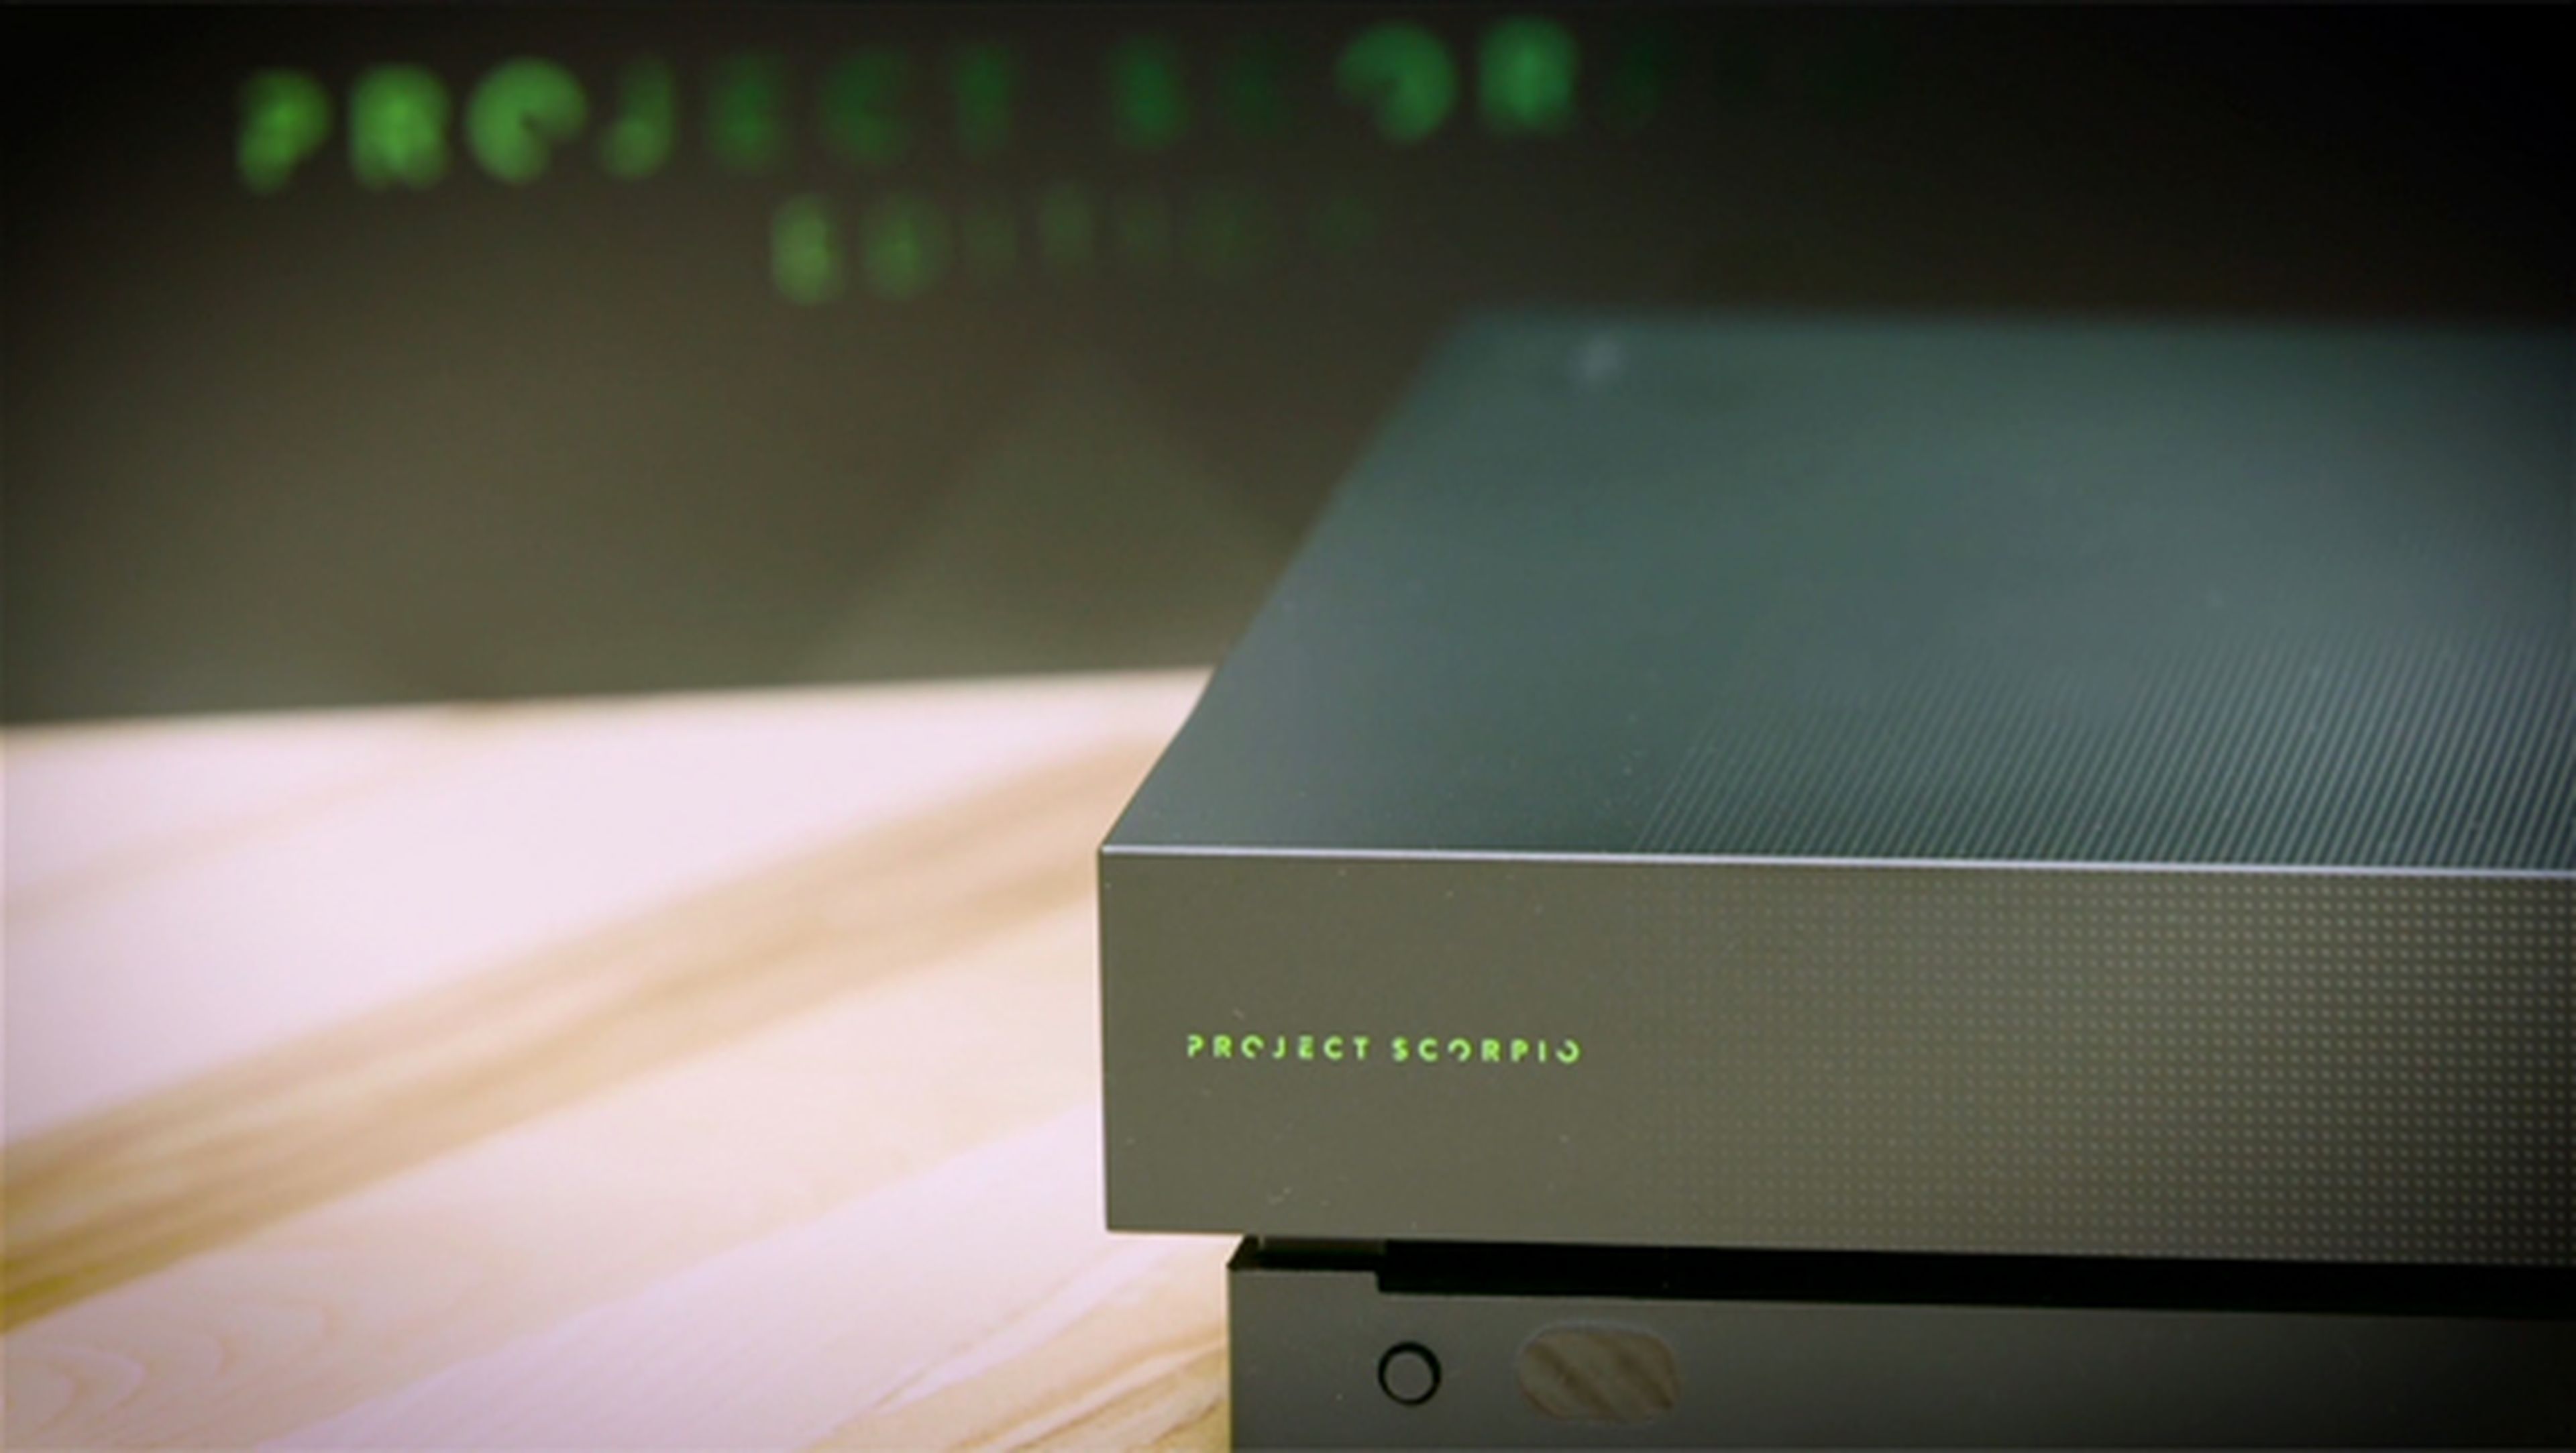 Dónde y cómo reservar la Xbox One X: consigue la edición Project Scorpio